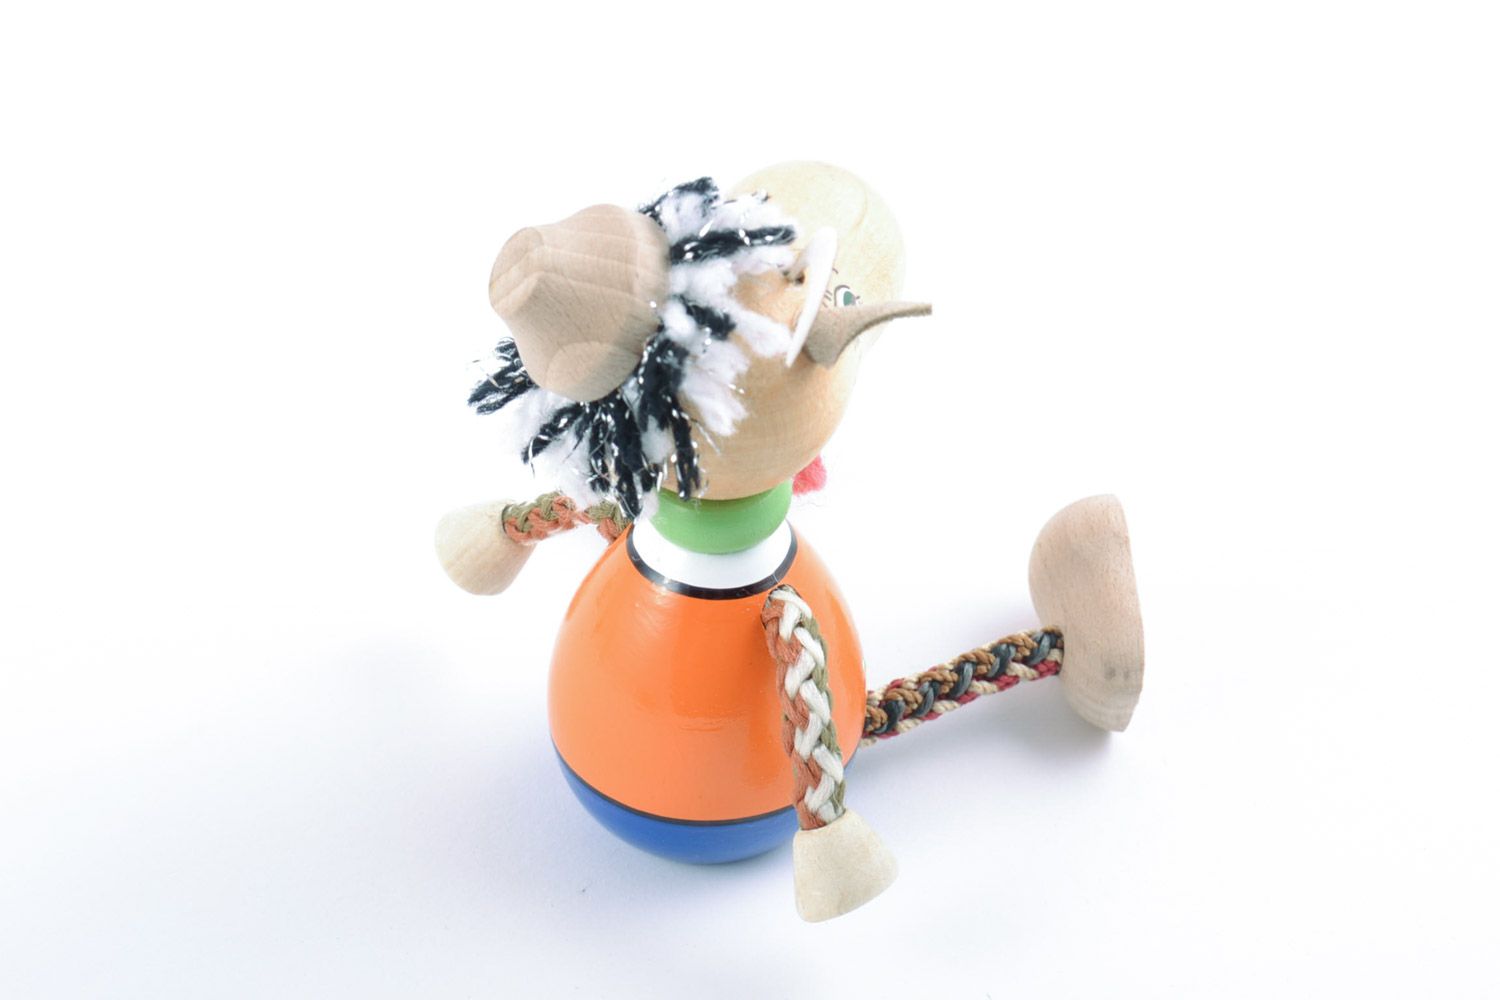 Игрушка из дерева расписанная красками в виде козлика экологически чистая  фото 5